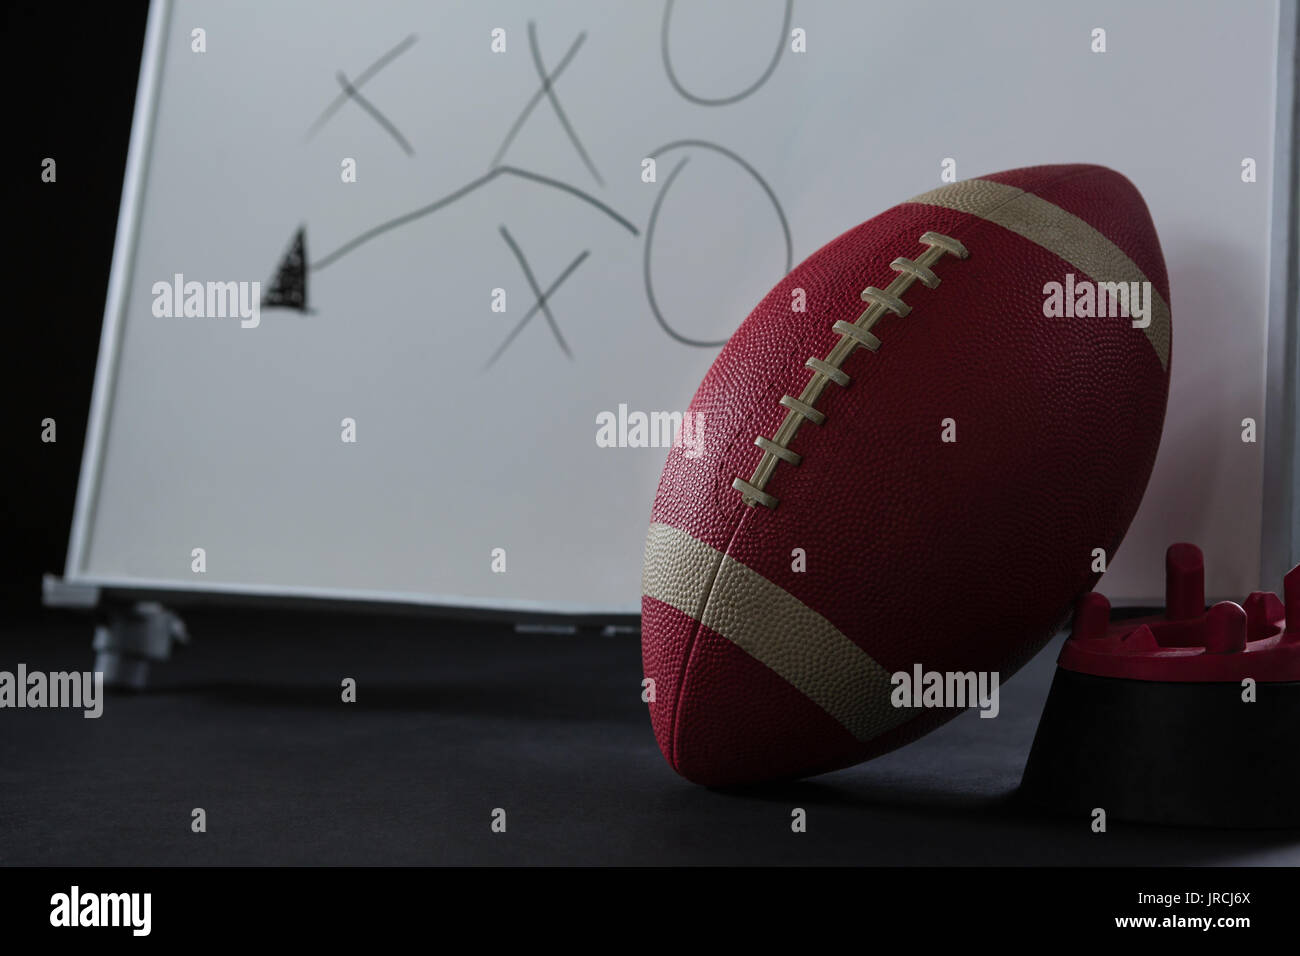 Close-up du football américain reposant sur support et stratégie de jeu dessiné sur un tableau blanc Banque D'Images